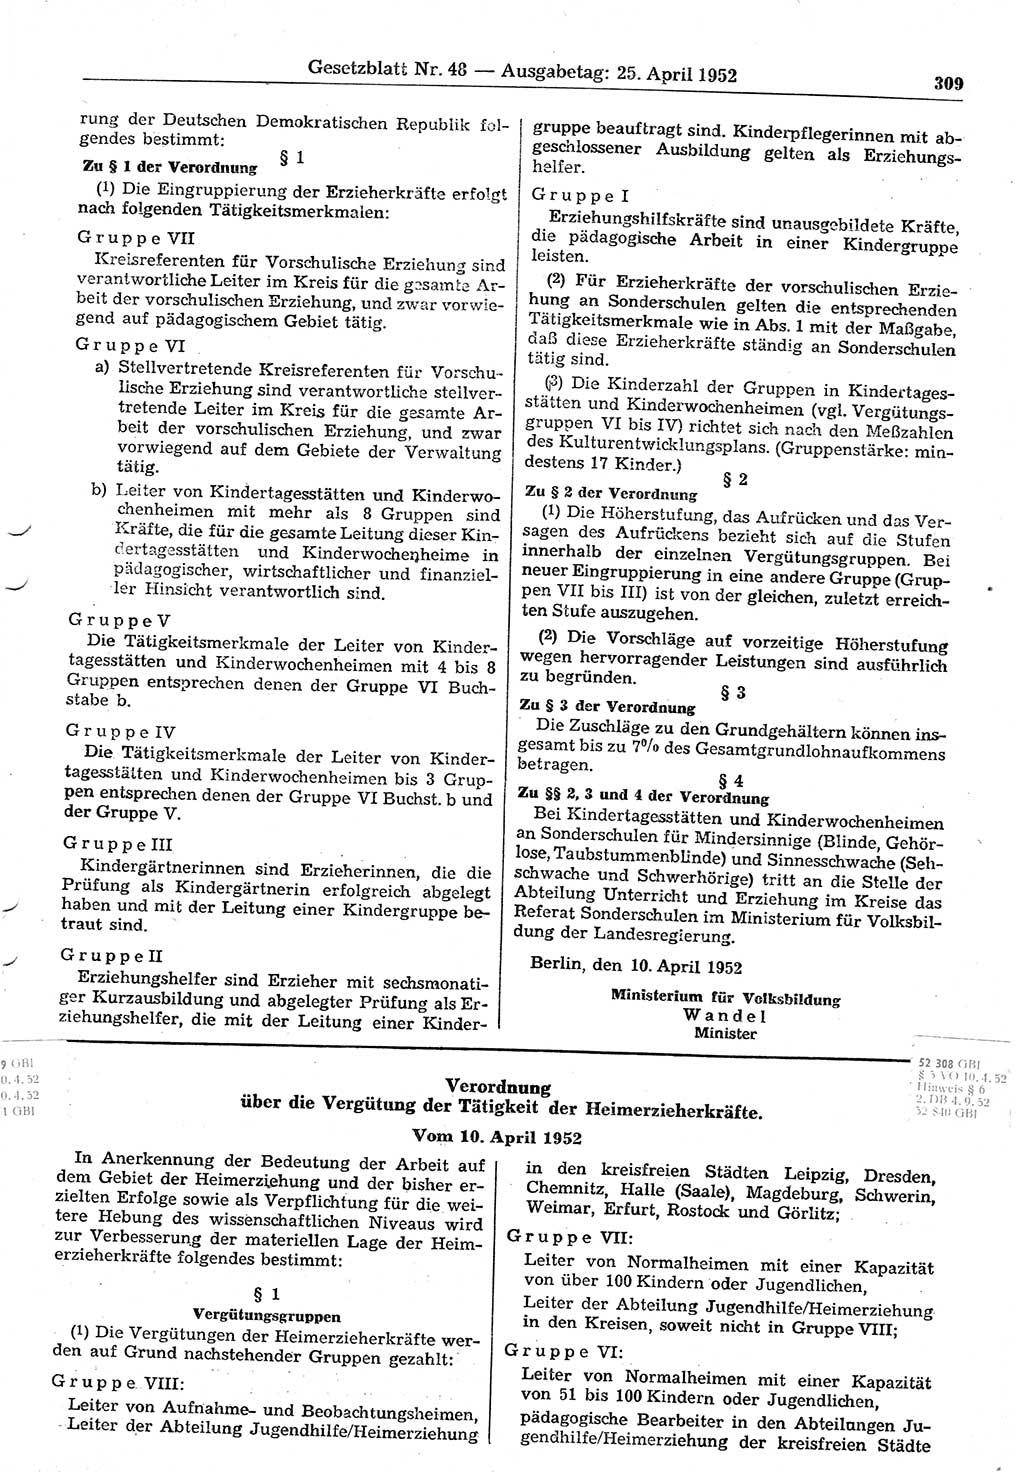 Gesetzblatt (GBl.) der Deutschen Demokratischen Republik (DDR) 1952, Seite 309 (GBl. DDR 1952, S. 309)